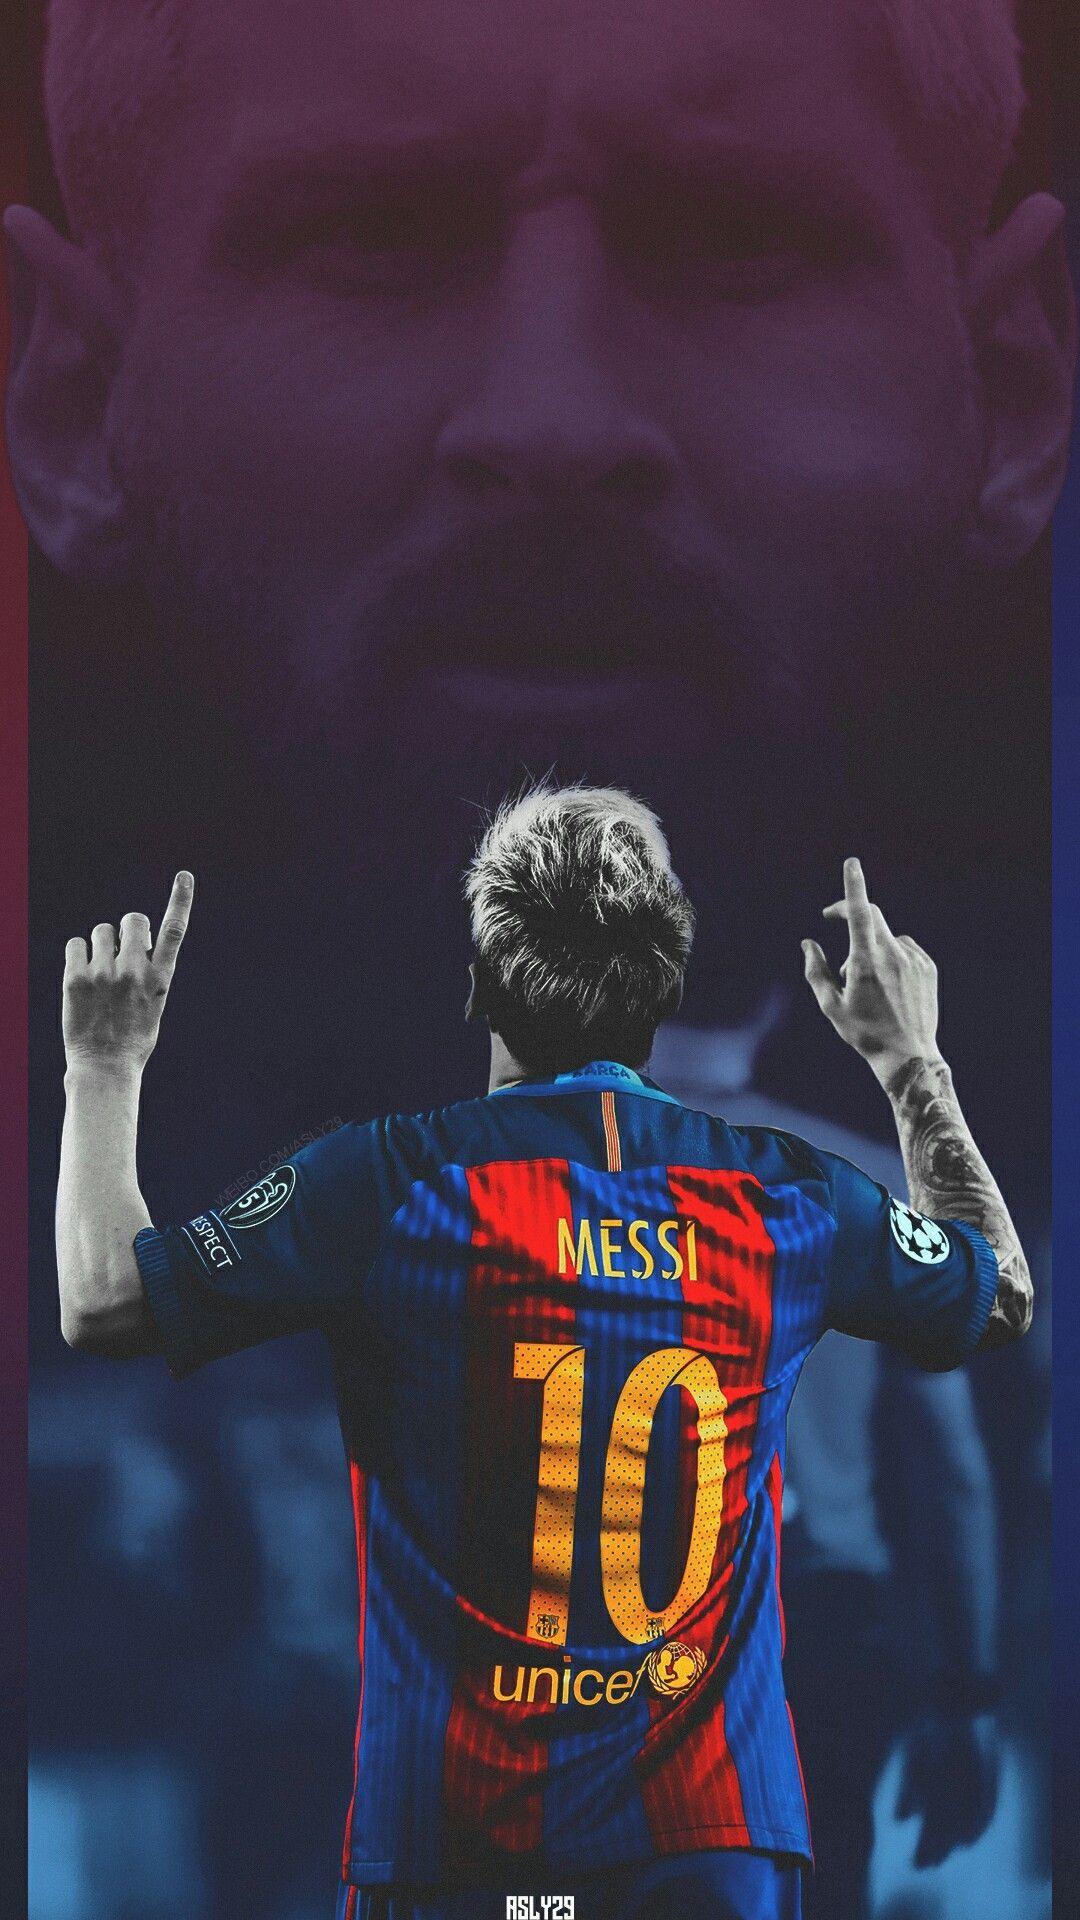 Khám phá bộ sưu tập Messi với hình nền siêu nét 4k, tạo ra một trải nghiệm đẹp mắt không thể tả xiết. Hình ảnh của Messi sẽ khiến bạn cảm thấy như đang ở bên cạnh anh ta trên sân bóng.